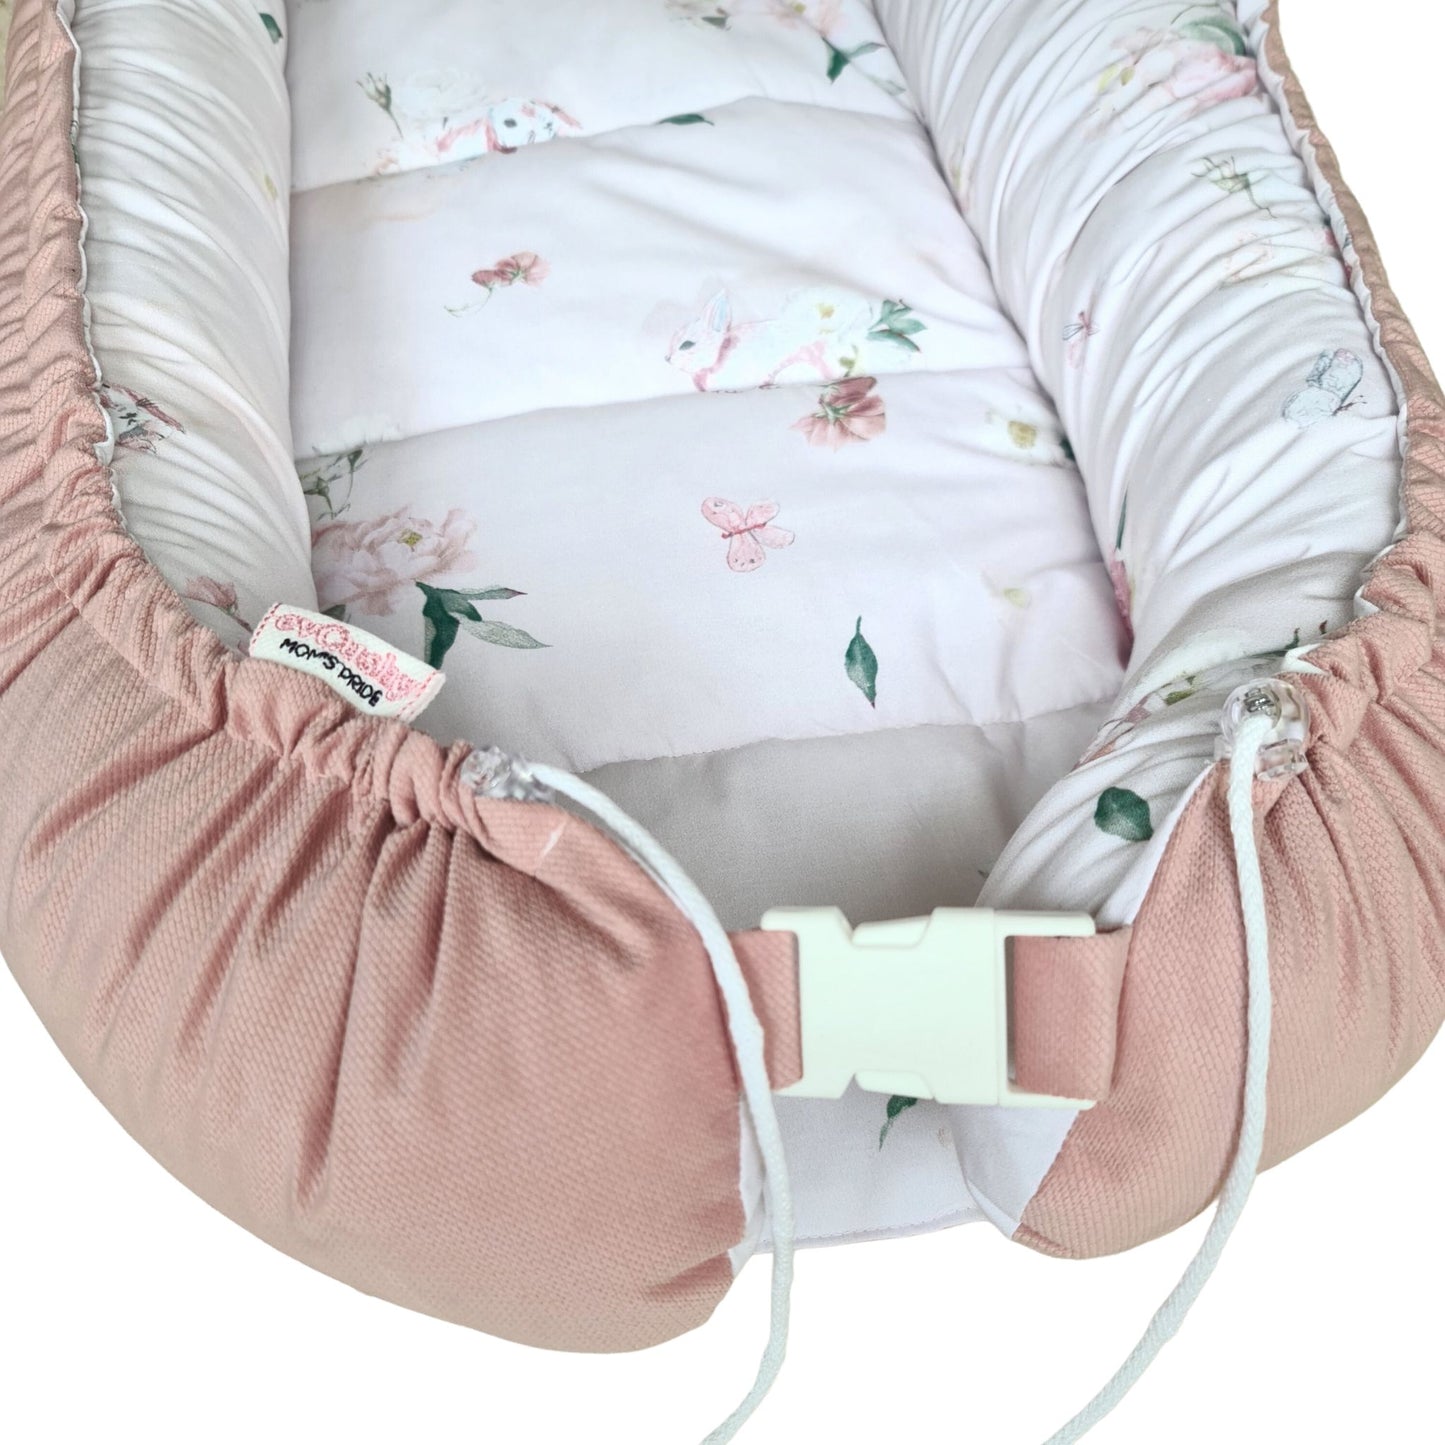 safe lounger nest sleep pod for children pink bunnies